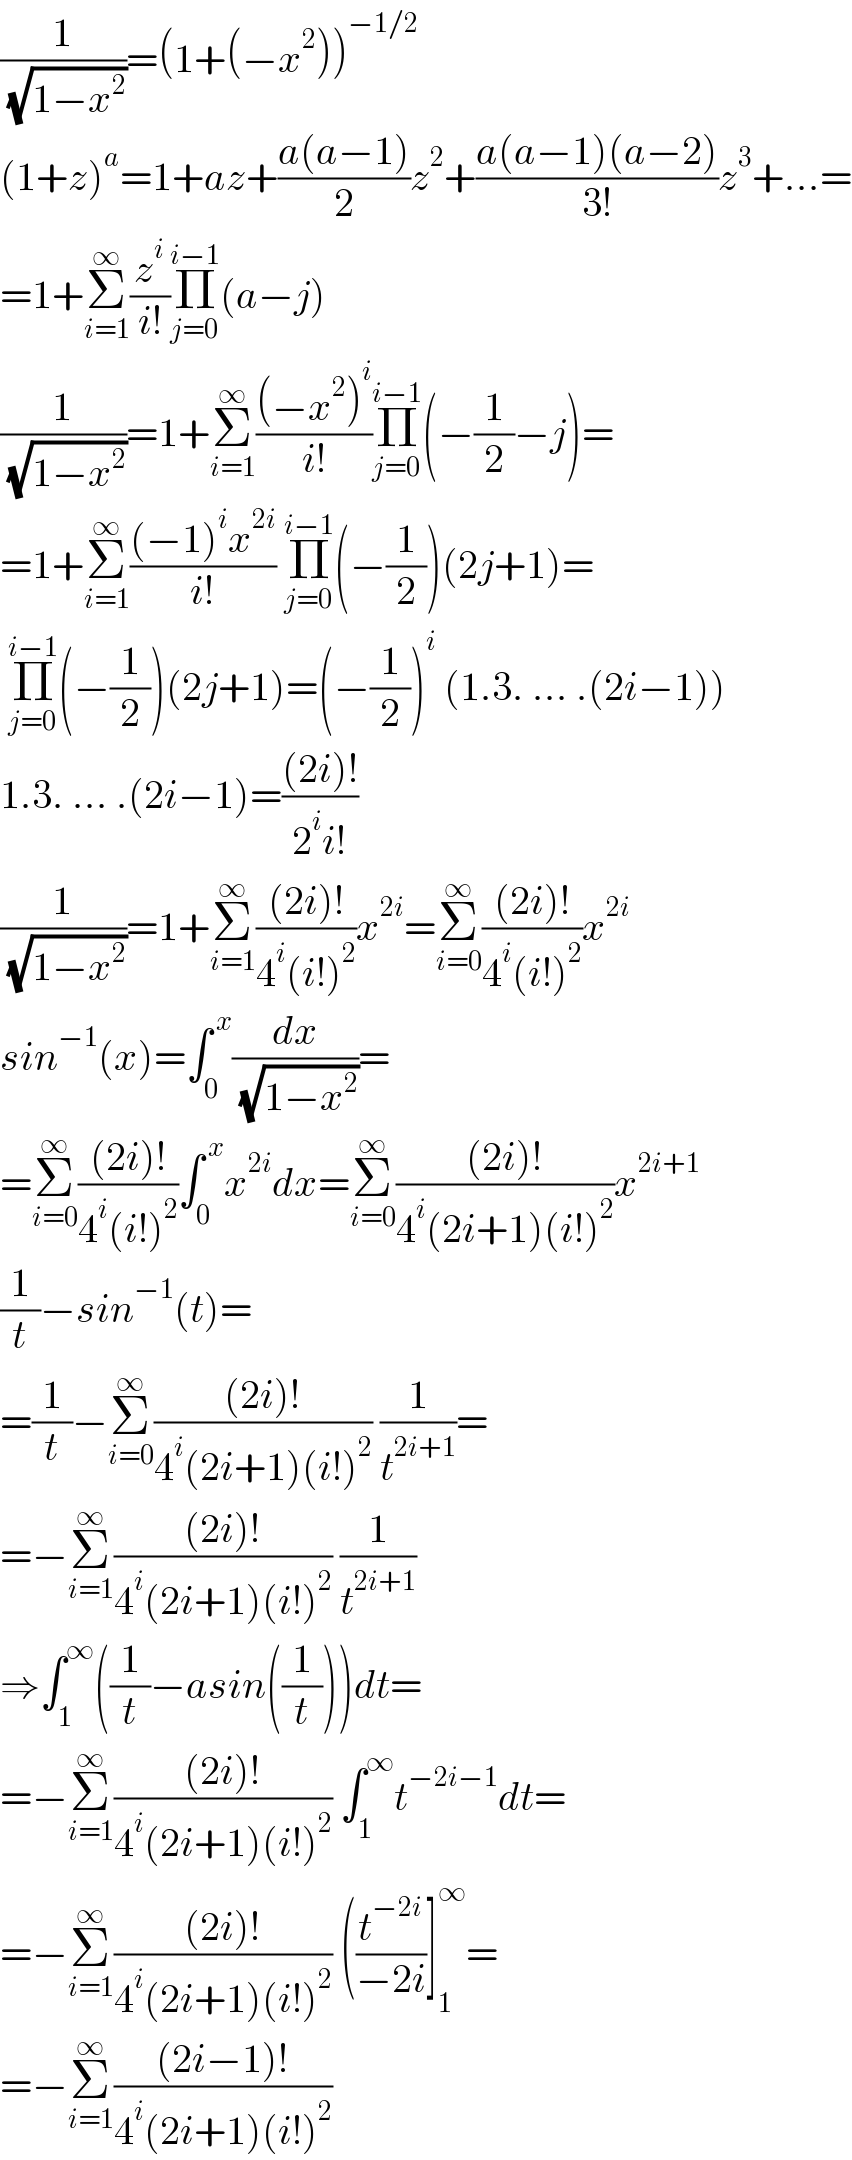 (1/( (√(1−x^2 ))))=(1+(−x^2 ))^(−1/2)   (1+z)^a =1+az+((a(a−1))/2)z^2 +((a(a−1)(a−2))/(3!))z^3 +...=  =1+Σ_(i=1) ^∞ (z^i /(i!))Π_(j=0) ^(i−1) (a−j)  (1/( (√(1−x^2 ))))=1+Σ_(i=1) ^∞ (((−x^2 )^i )/(i!))Π_(j=0) ^(i−1) (−(1/2)−j)=  =1+Σ_(i=1) ^∞ (((−1)^i x^(2i) )/(i!)) Π_(j=0) ^(i−1) (−(1/2))(2j+1)=   Π_(j=0) ^(i−1) (−(1/2))(2j+1)=(−(1/2))^i  (1.3. ... .(2i−1))  1.3. ... .(2i−1)=(((2i)!)/(2^i i!))  (1/( (√(1−x^2 ))))=1+Σ_(i=1) ^∞ (((2i)!)/(4^i (i!)^2 ))x^(2i) =Σ_(i=0) ^∞ (((2i)!)/(4^i (i!)^2 ))x^(2i)   sin^(−1) (x)=∫_0 ^( x) (dx/( (√(1−x^2 ))))=  =Σ_(i=0) ^∞ (((2i)!)/(4^i (i!)^2 ))∫_0 ^( x) x^(2i) dx=Σ_(i=0) ^∞ (((2i)!)/(4^i (2i+1)(i!)^2 ))x^(2i+1)   (1/t)−sin^(−1) (t)=  =(1/t)−Σ_(i=0) ^∞ (((2i)!)/(4^i (2i+1)(i!)^2 )) (1/t^(2i+1) )=  =−Σ_(i=1) ^∞ (((2i)!)/(4^i (2i+1)(i!)^2 )) (1/t^(2i+1) )  ⇒∫_1 ^∞ ((1/t)−asin((1/t)))dt=  =−Σ_(i=1) ^∞ (((2i)!)/(4^i (2i+1)(i!)^2 )) ∫_1 ^∞ t^(−2i−1) dt=  =−Σ_(i=1) ^∞ (((2i)!)/(4^i (2i+1)(i!)^2 )) ((t^(−2i) /(−2i))]_1 ^∞ =  =−Σ_(i=1) ^∞ (((2i−1)!)/(4^i (2i+1)(i!)^2 ))  